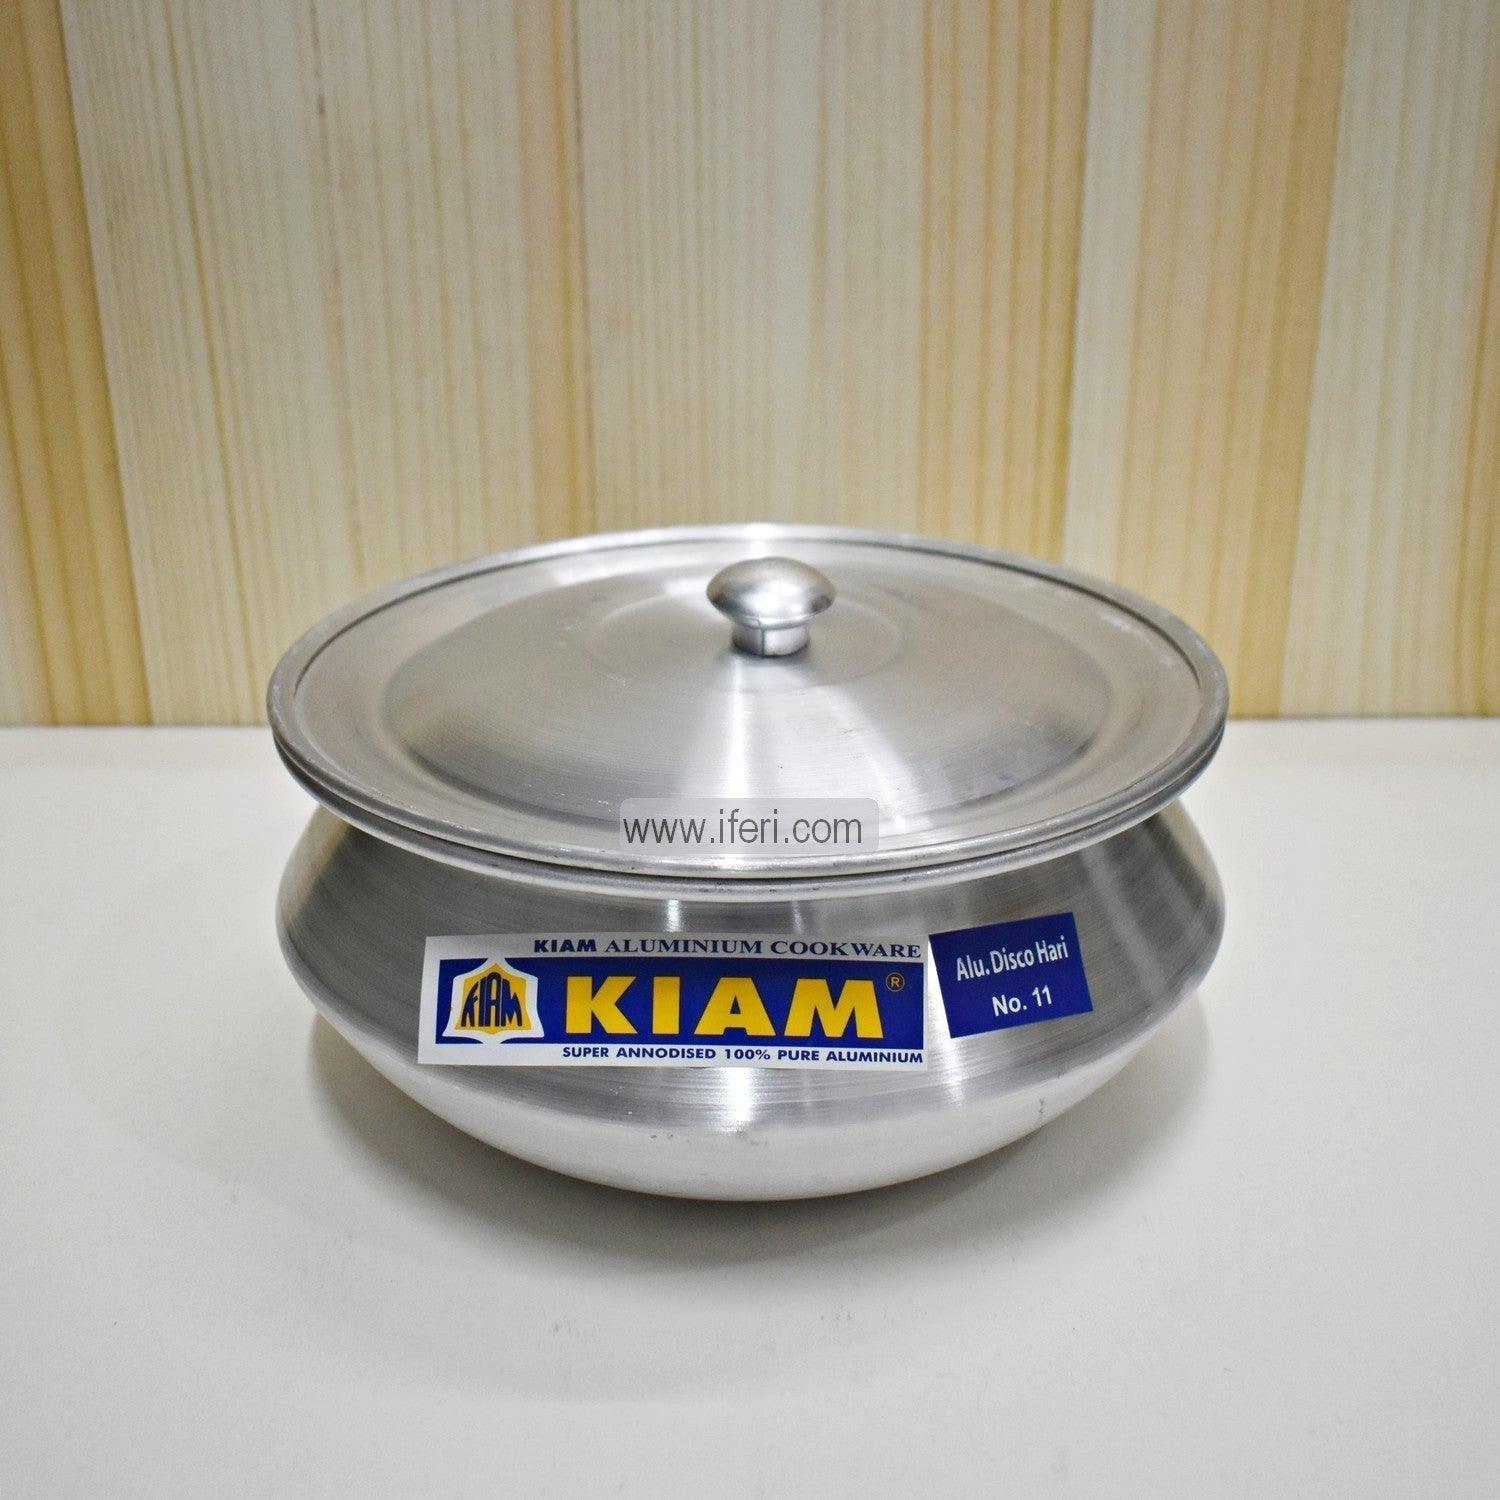 14 cm Kiam Aluminium Hari Cookware With Aluminium Lid BCG02221 Price in Bangladesh - iferi.com